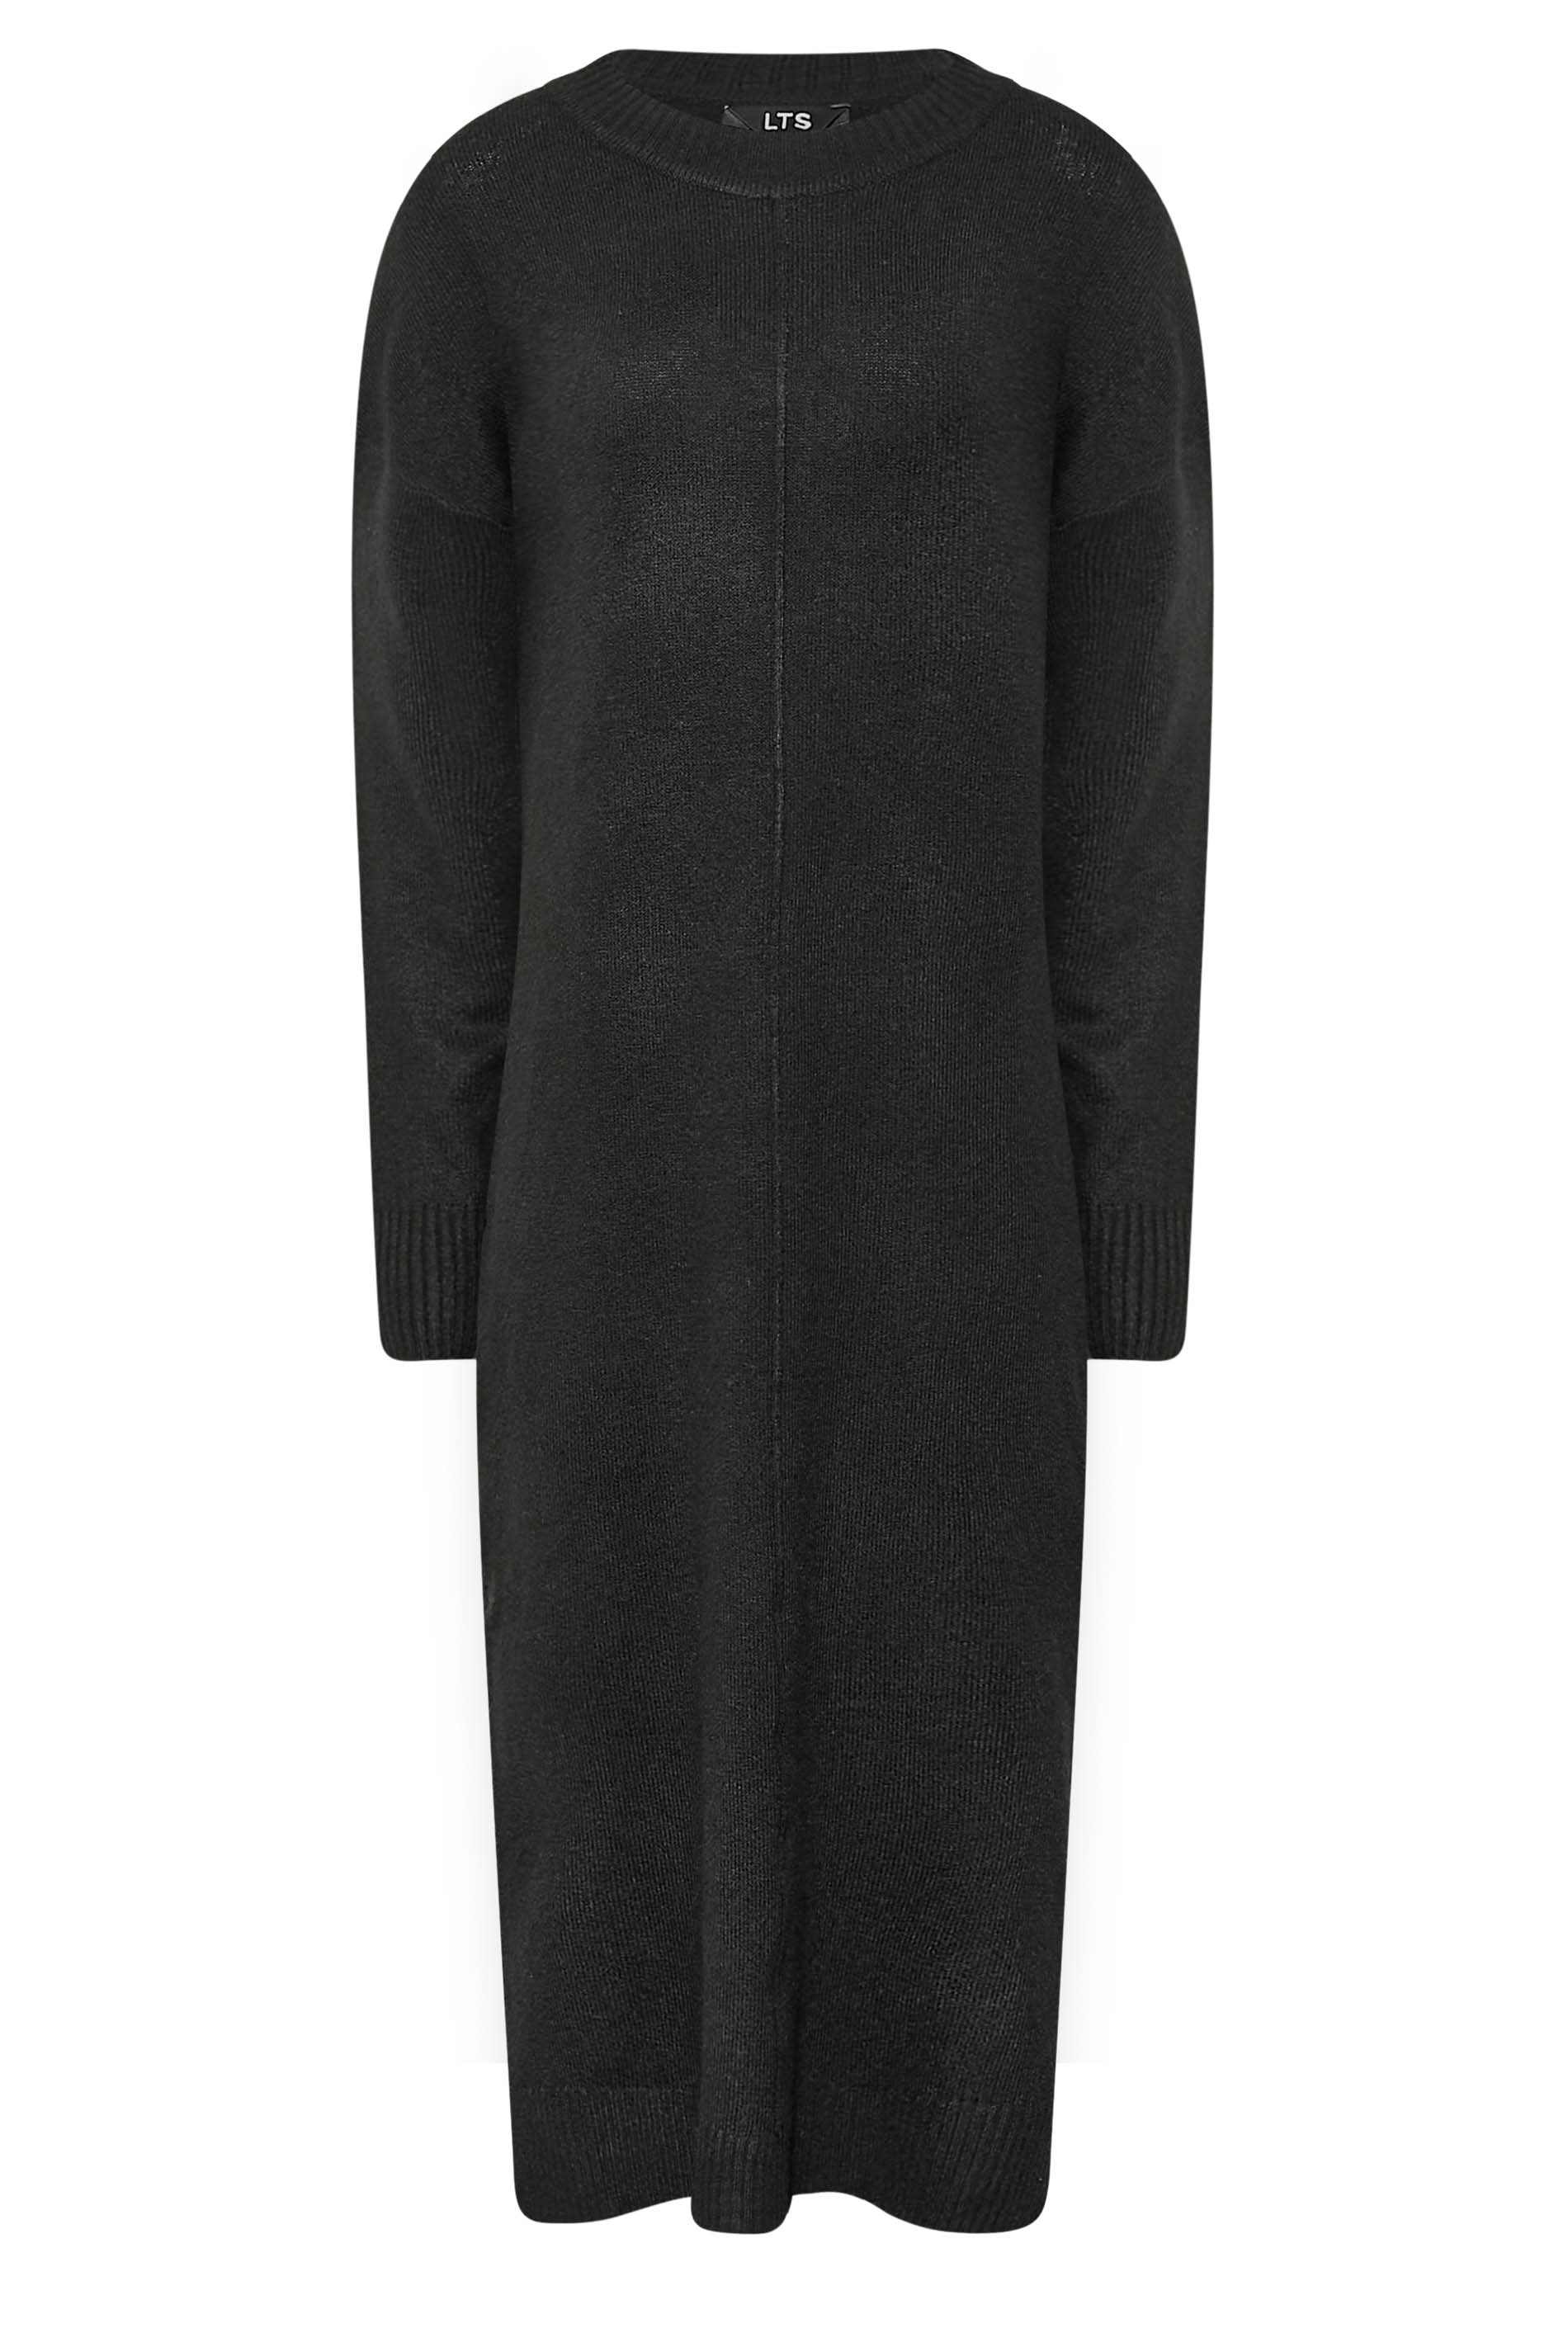 LTS Tall Women's Black Knitted Midi Dress | Long Tall Sally  3